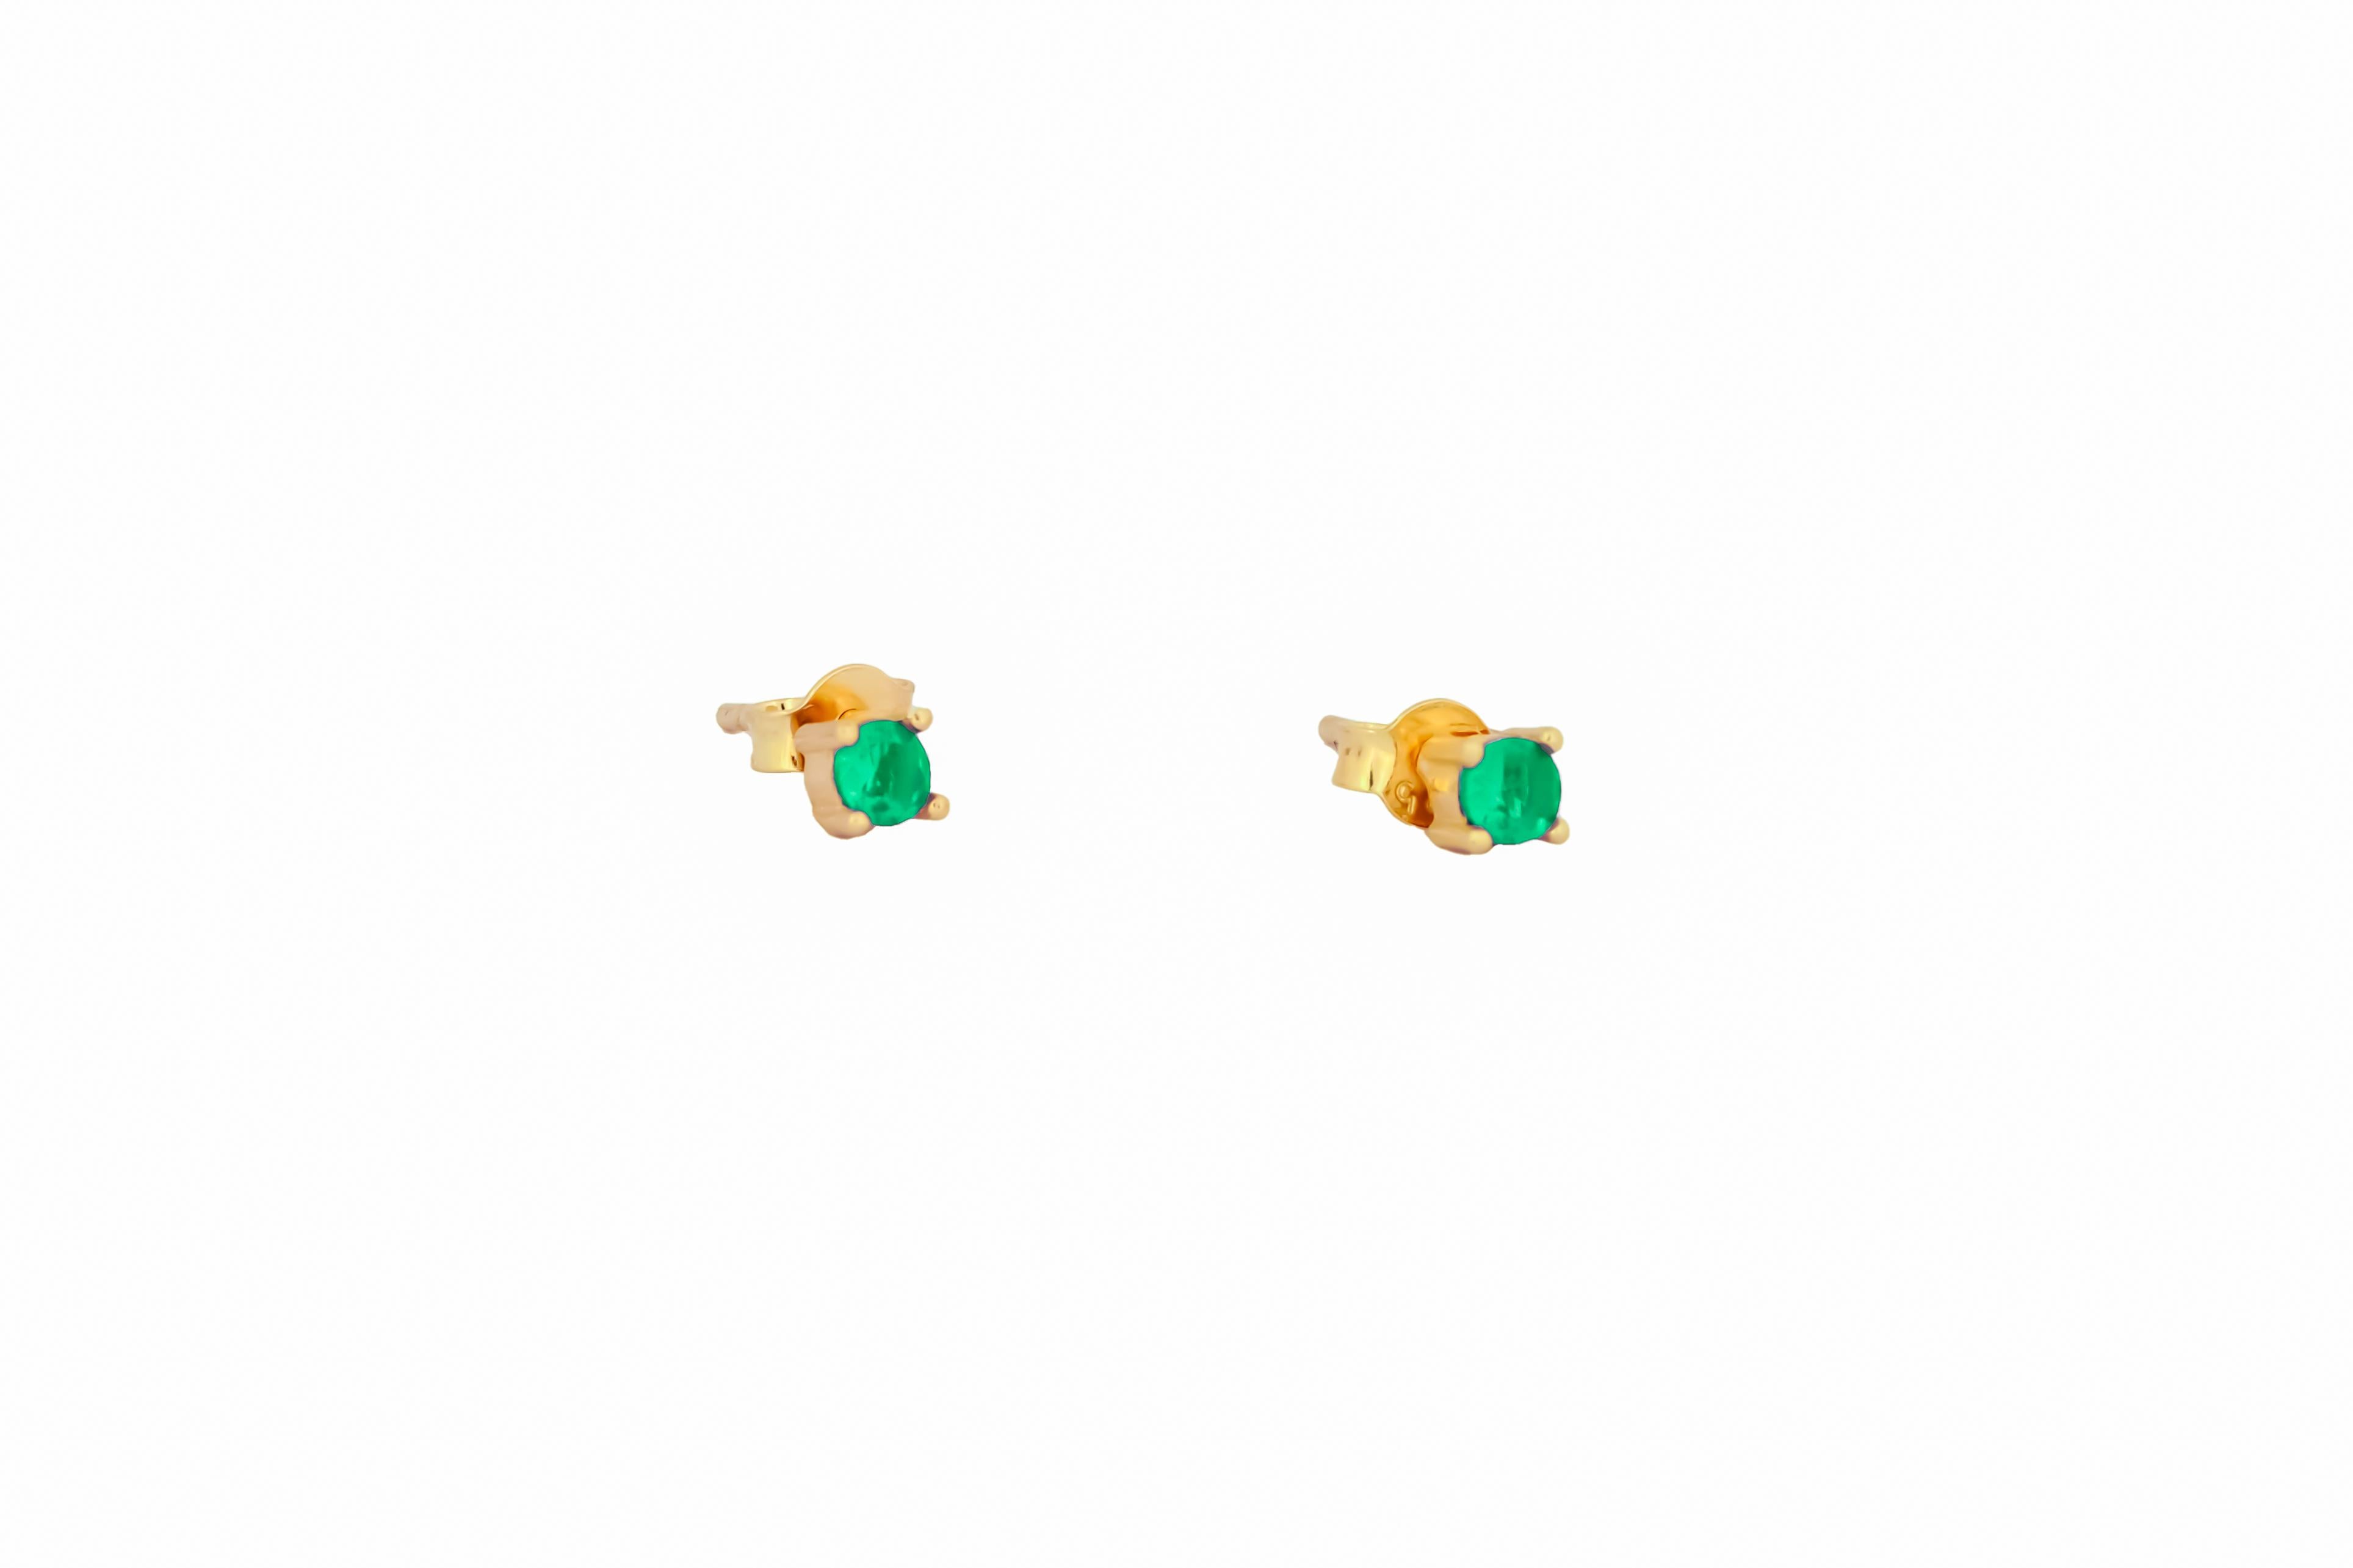 14 Karat Gold Lab Smaragd-Ohrstecker.  
3 mm Smaragd-Ohrringe. Grüne Edelstein-Ohrringe. Kleine zarte Ohrstecker aus Gold. Vier Zacken. Minimalistische Smaragd-Ohrringe.

Metall: 14k Massivgold
Gewicht: 1,5 gr.
Ohrringe mit